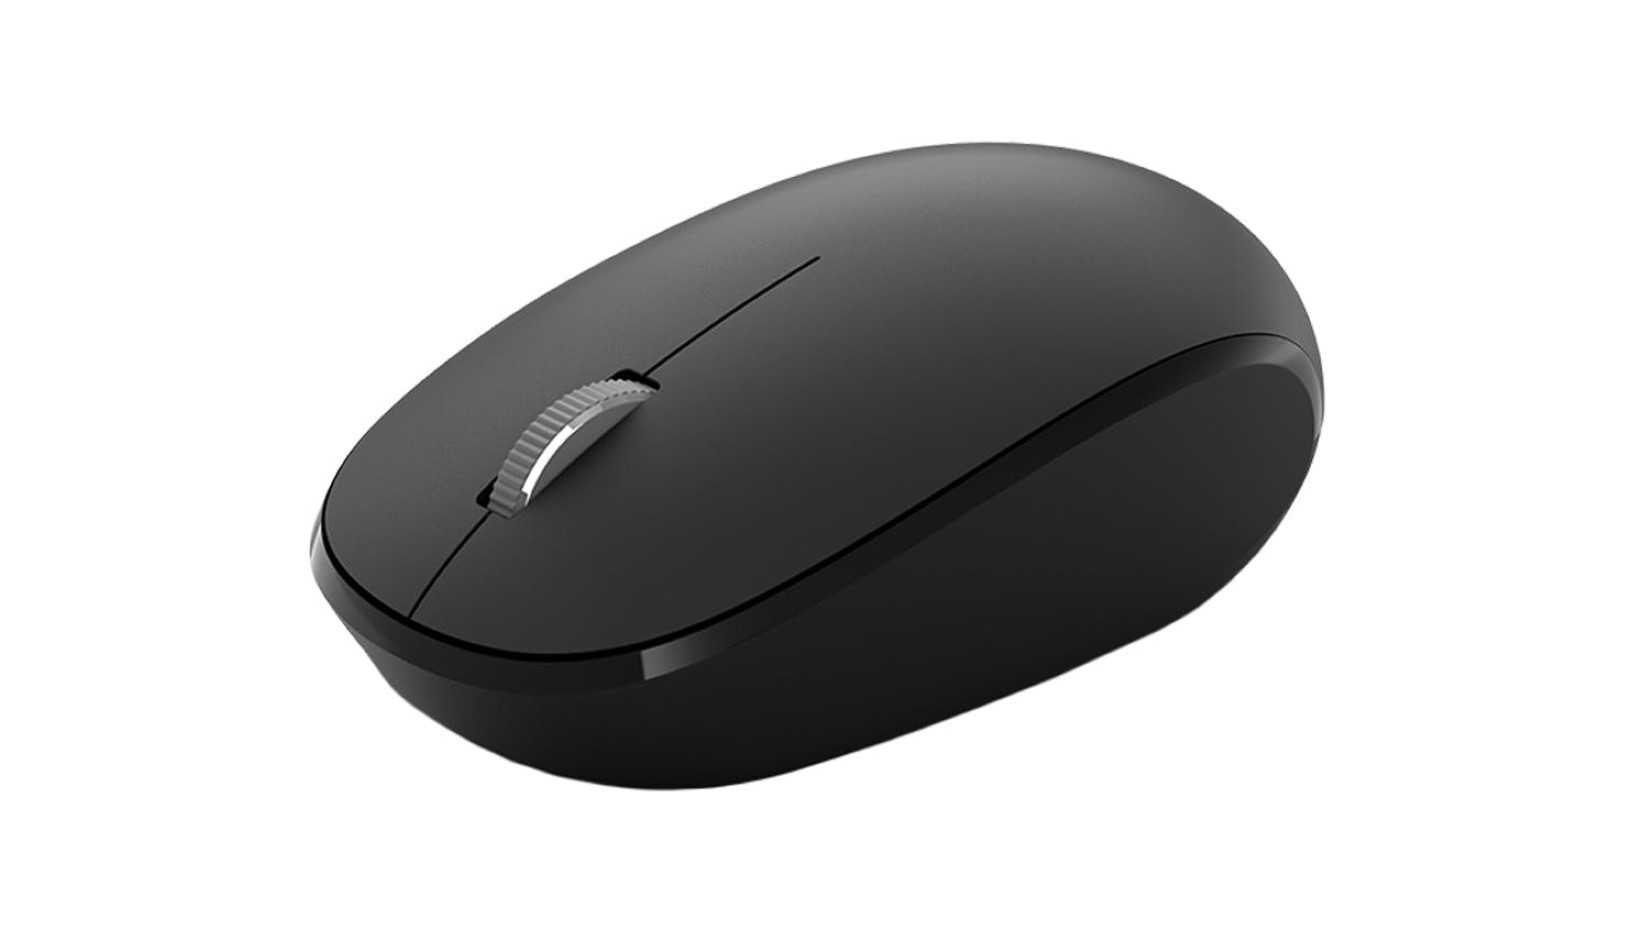 Chuột không dây Microsoft Bluetooth Mouse RJN-00005 có thiết kế thông minh